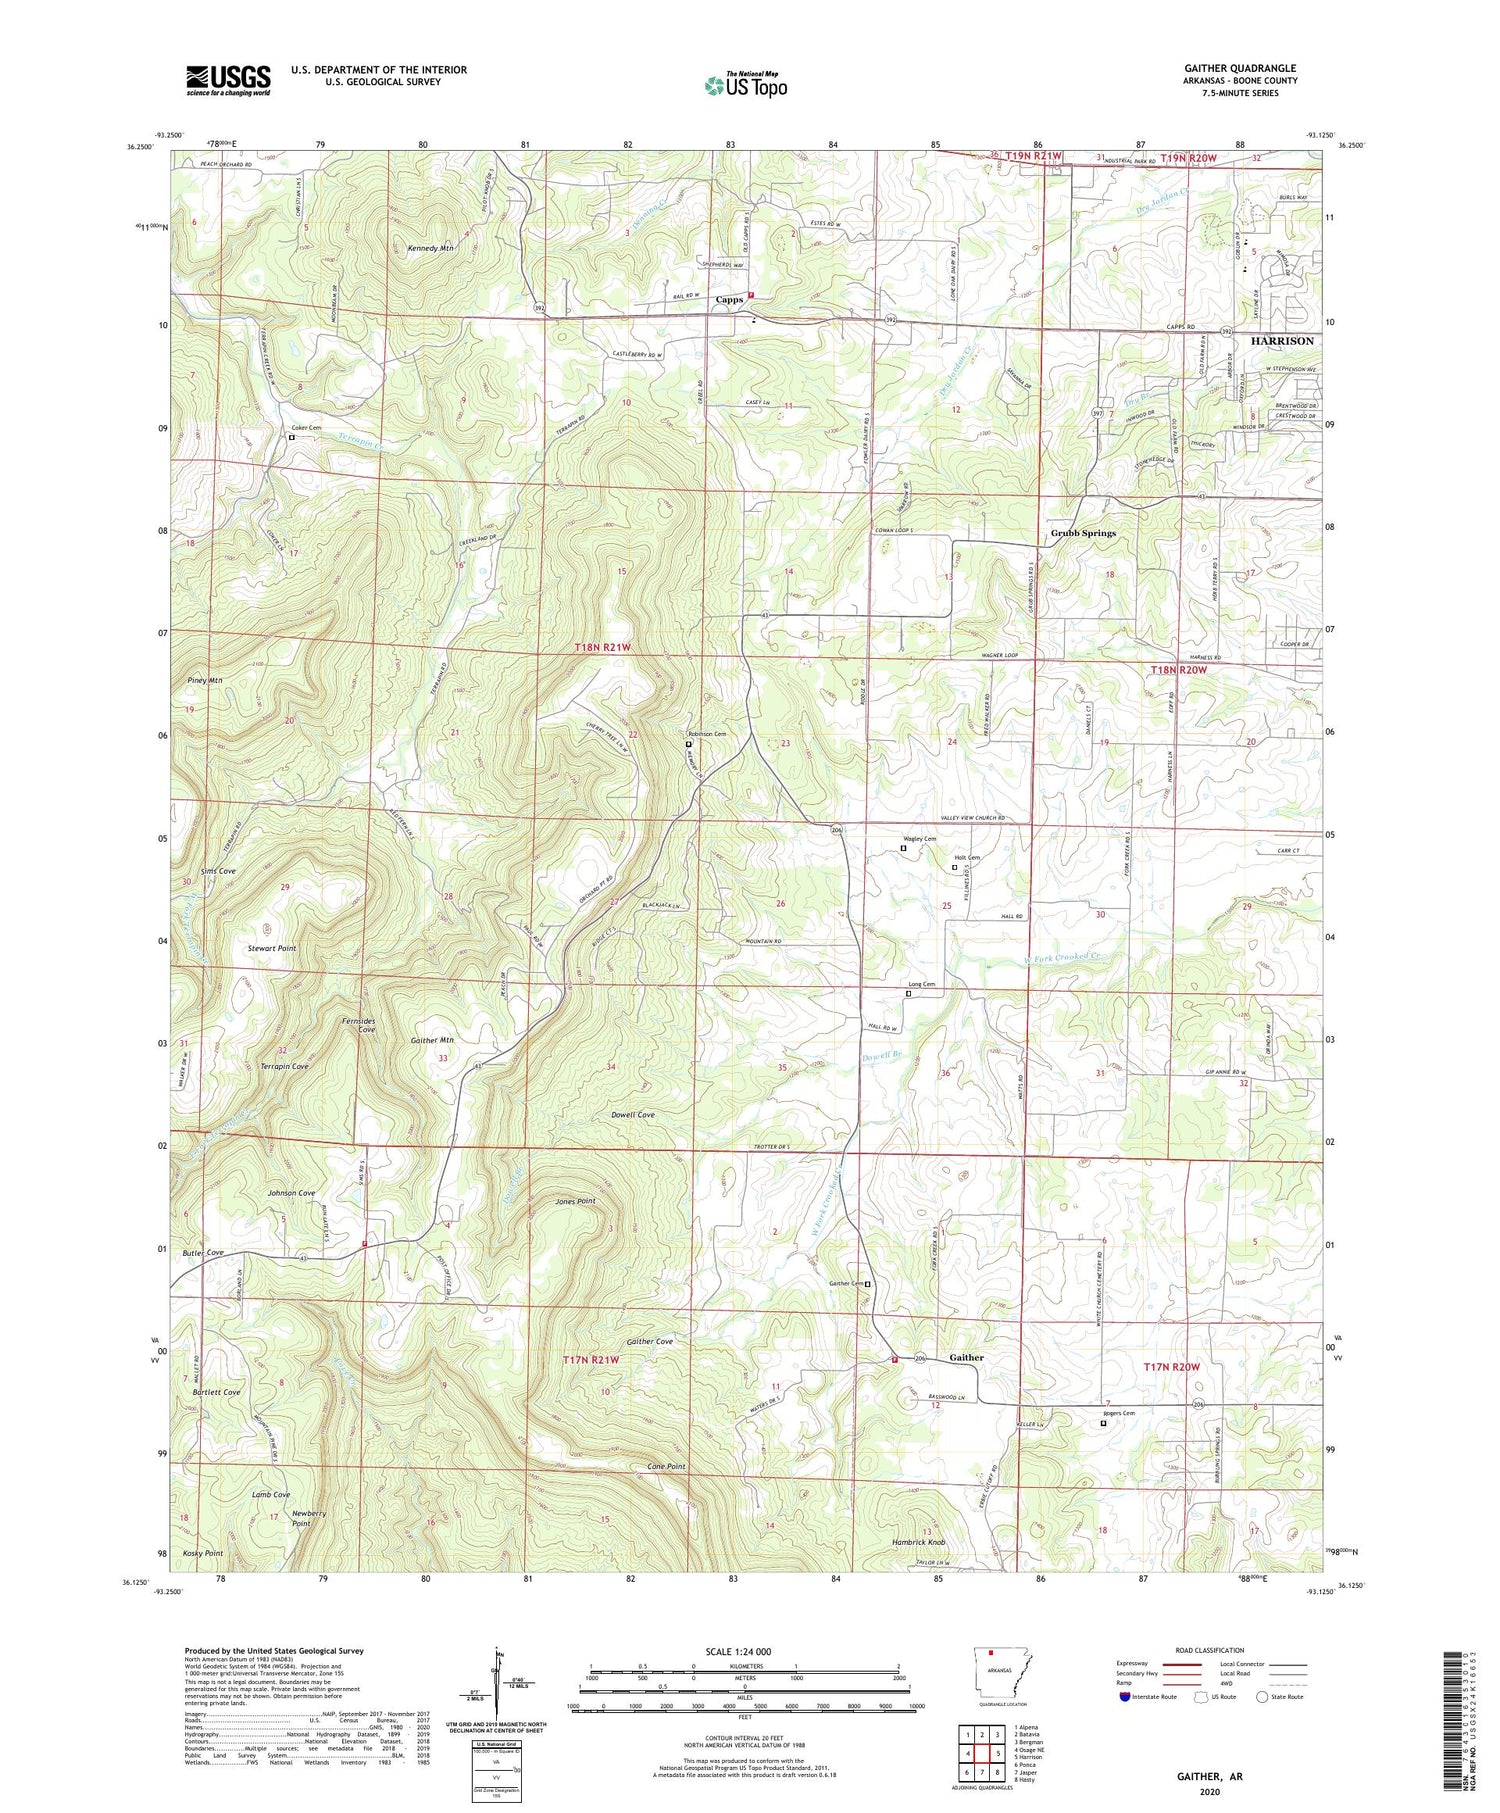 Gaither Arkansas US Topo Map Image